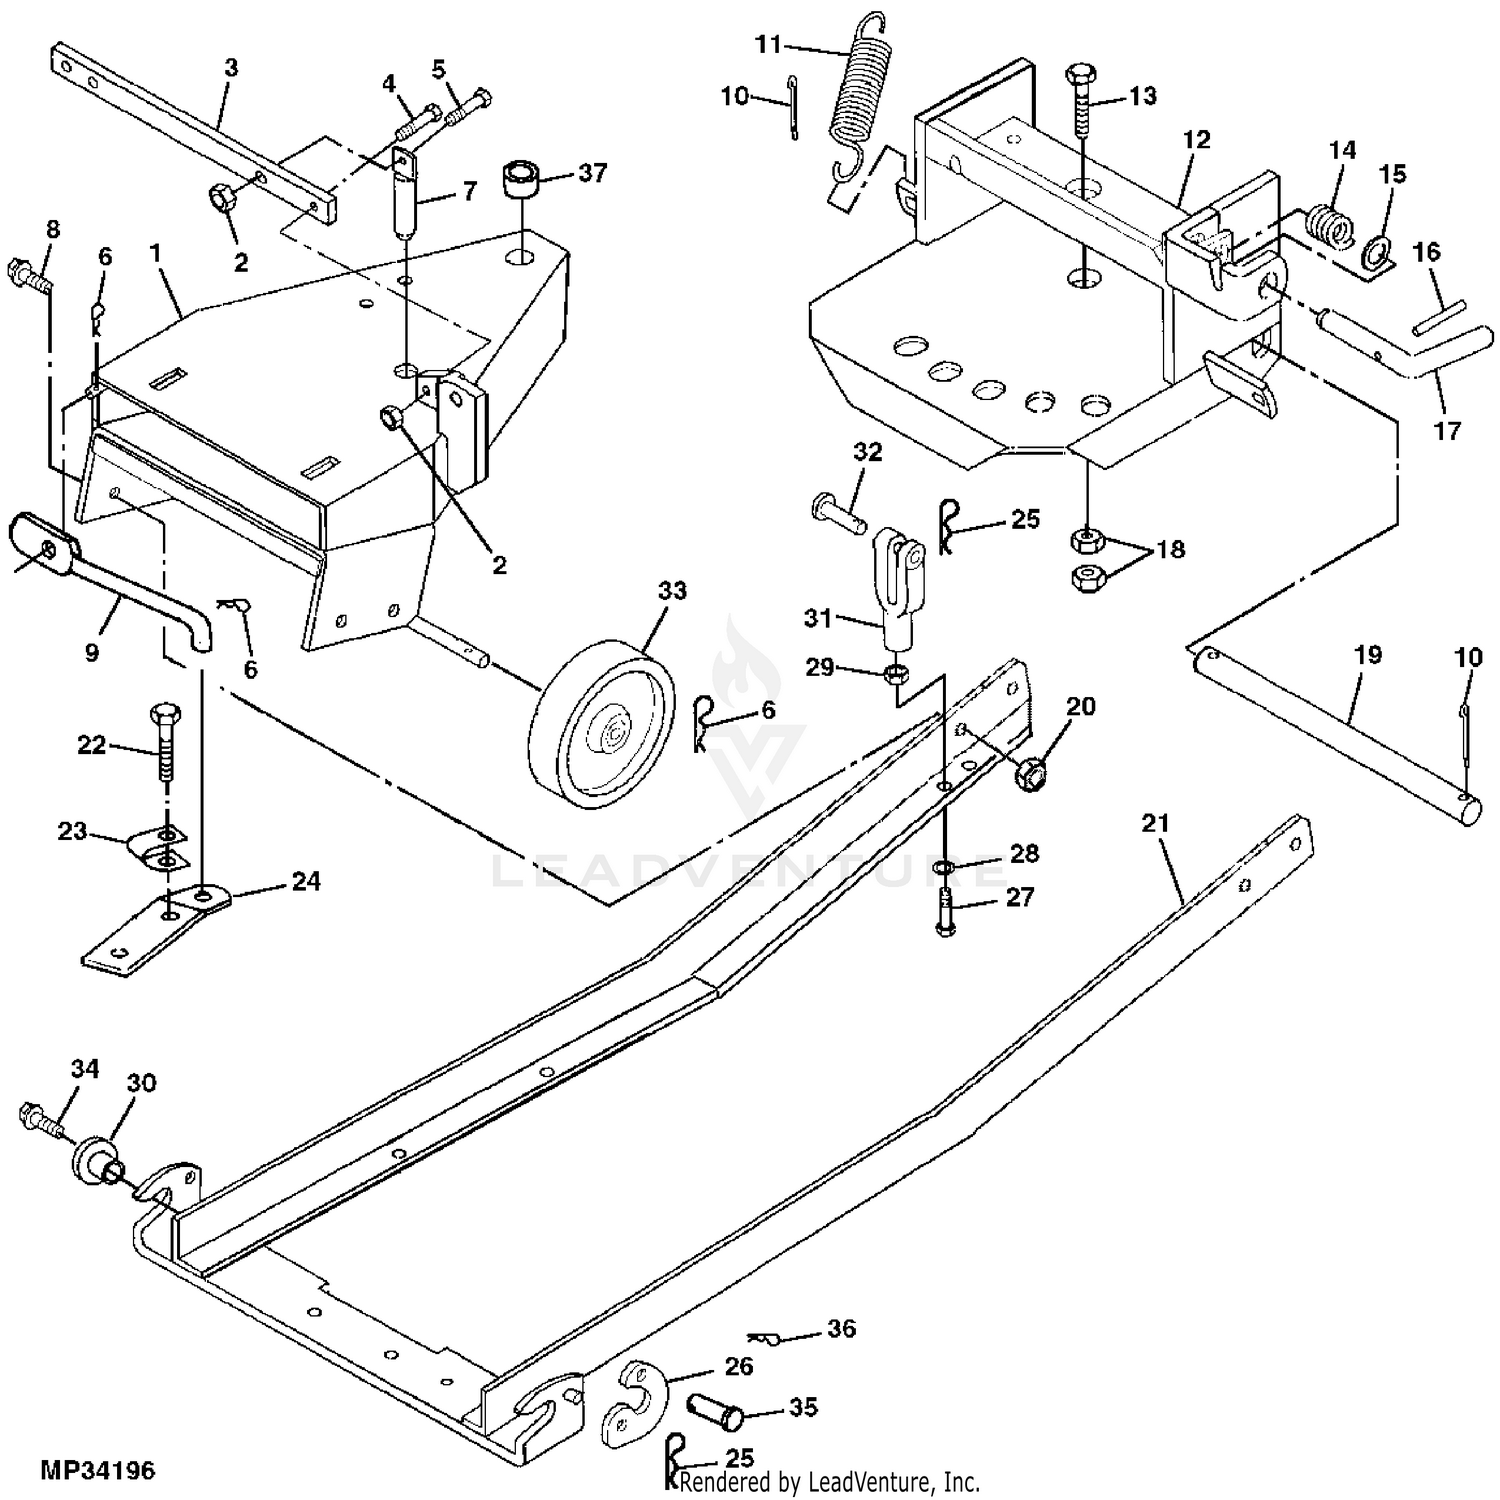 John Deere 44H Plow Parts Manual